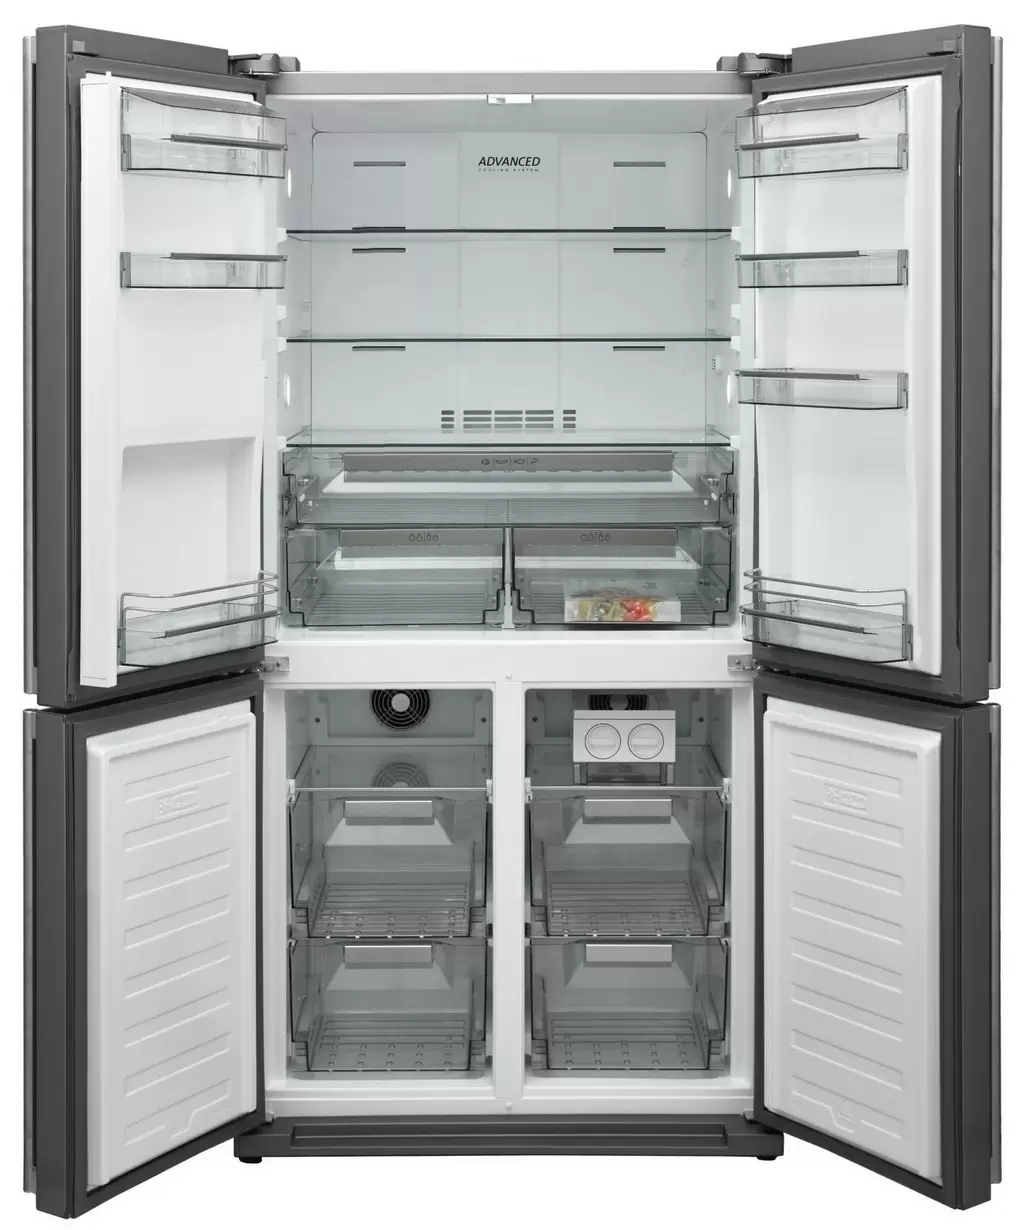 Холодильник Sharp SJFF560EVIEU, нержавеющая сталь